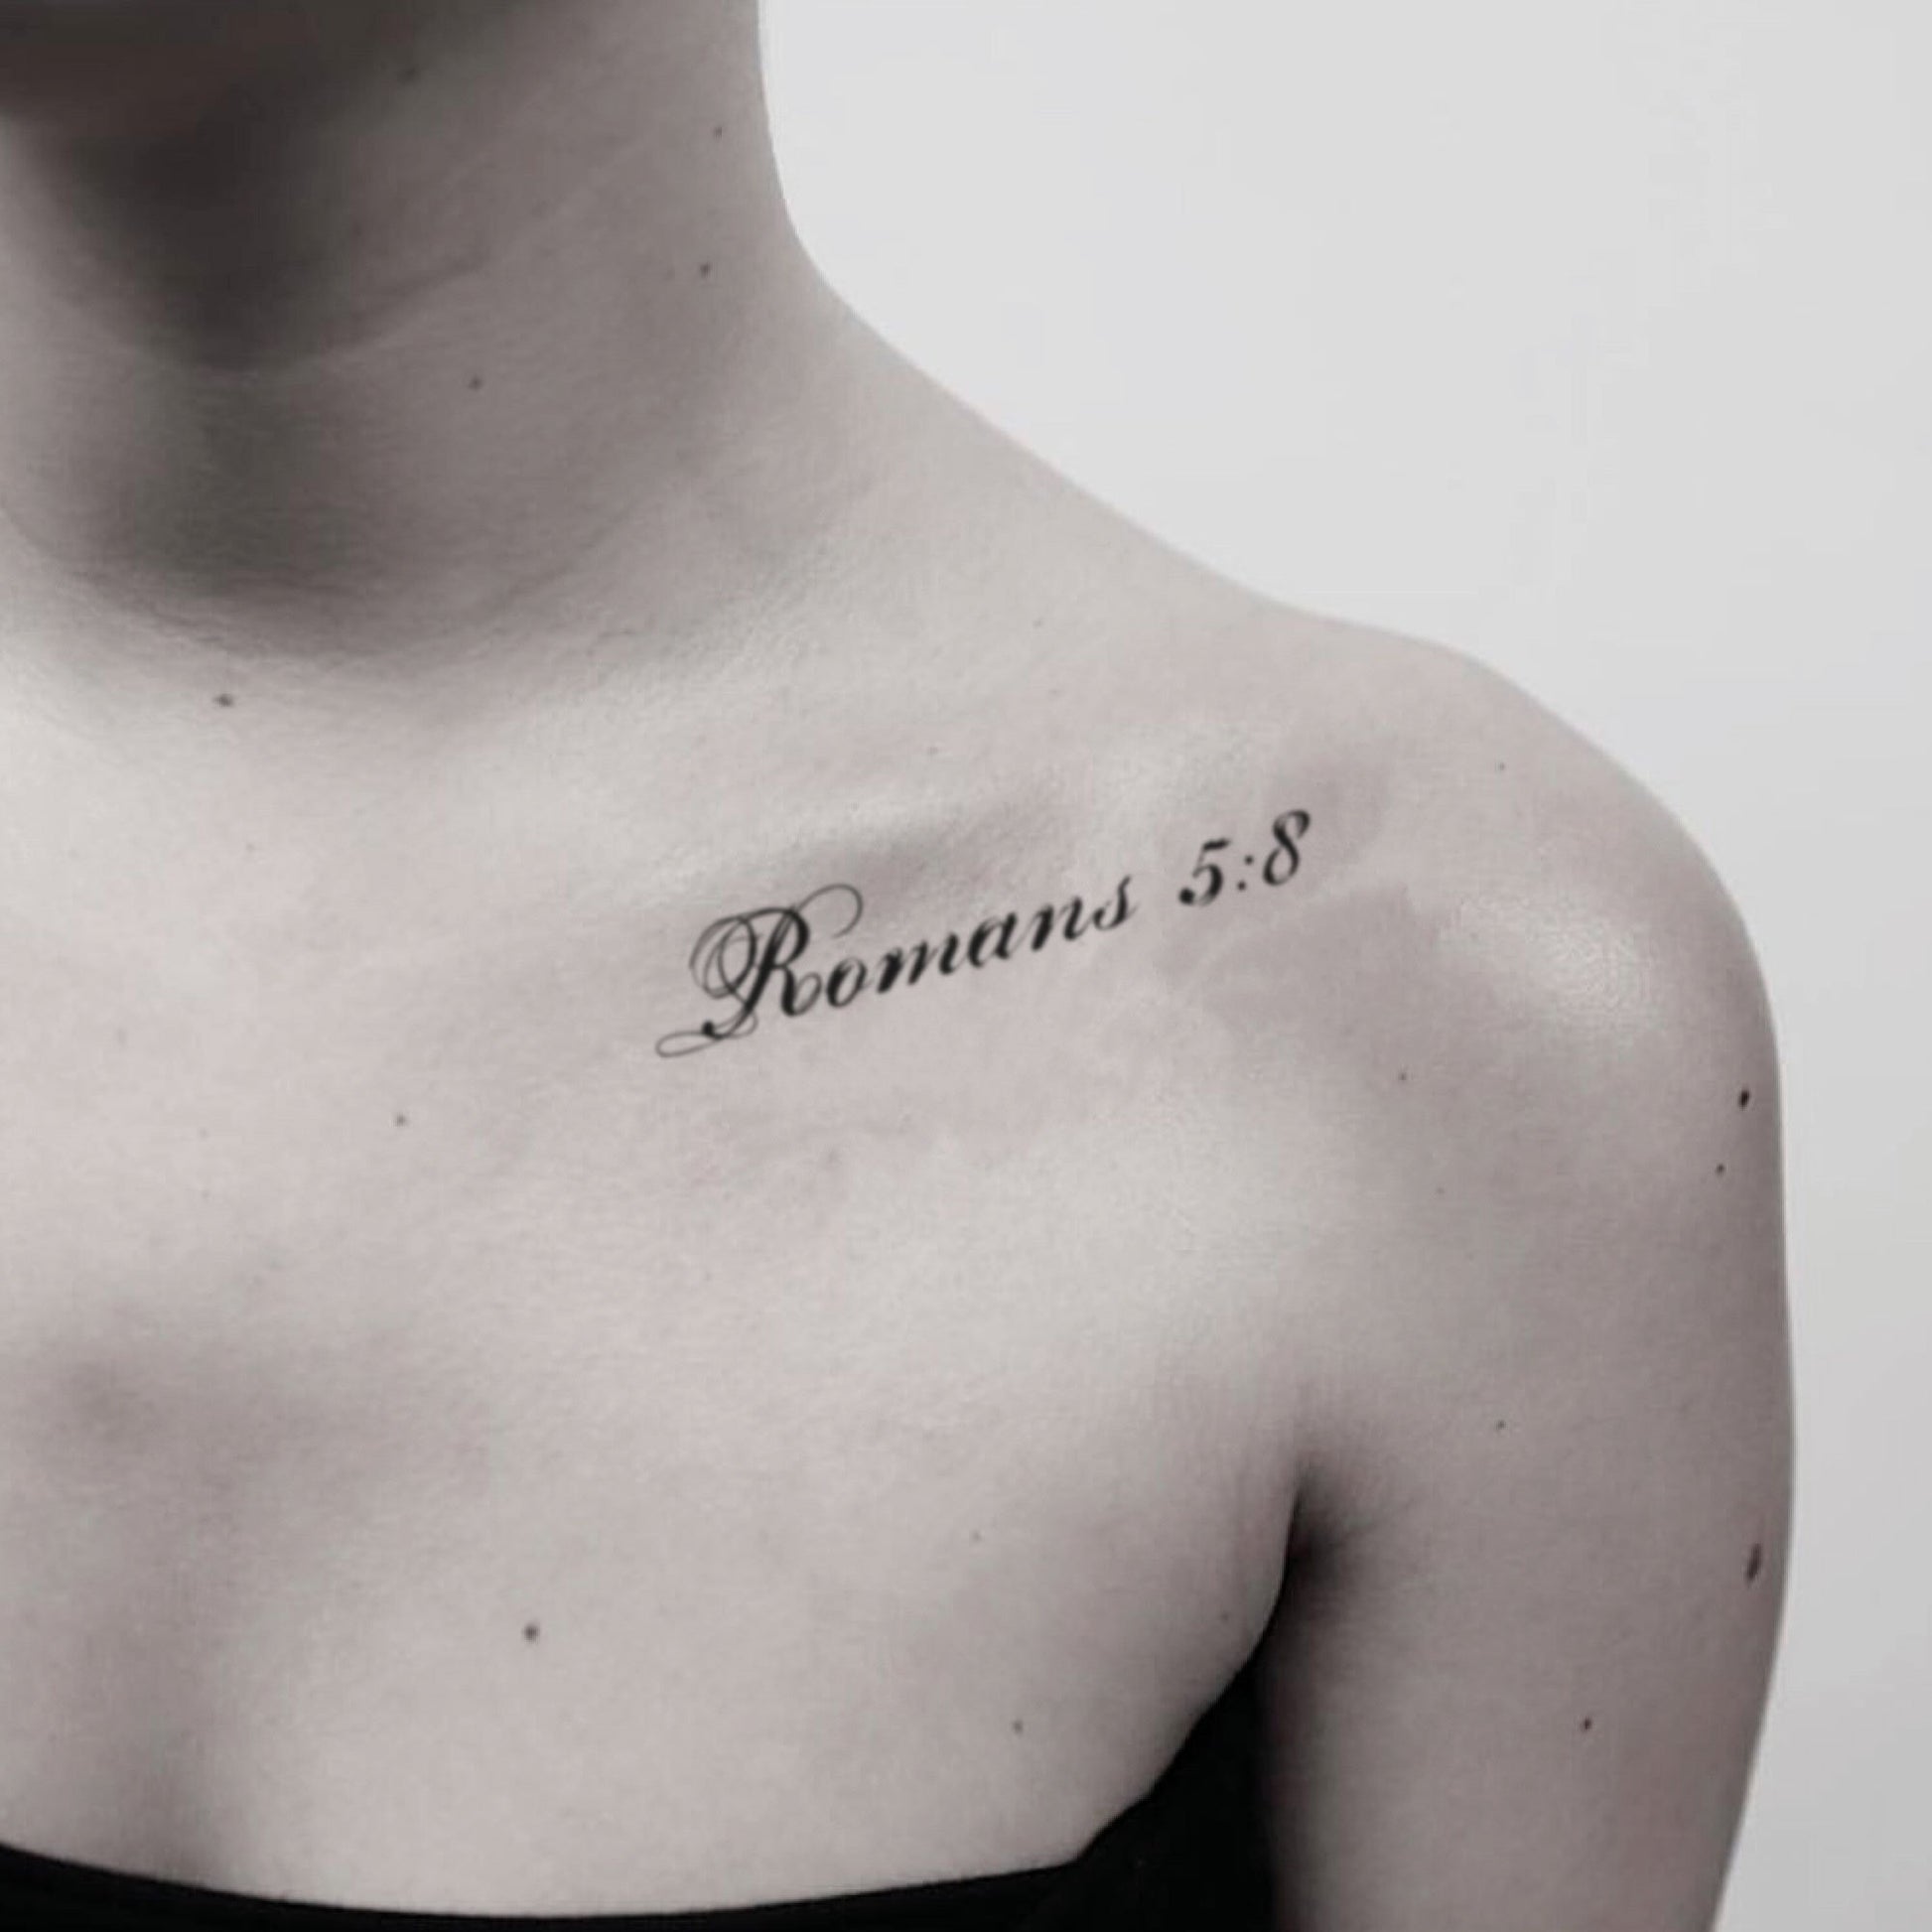 fake medium romans 5:8 lettering temporary tattoo sticker design idea on shoulder